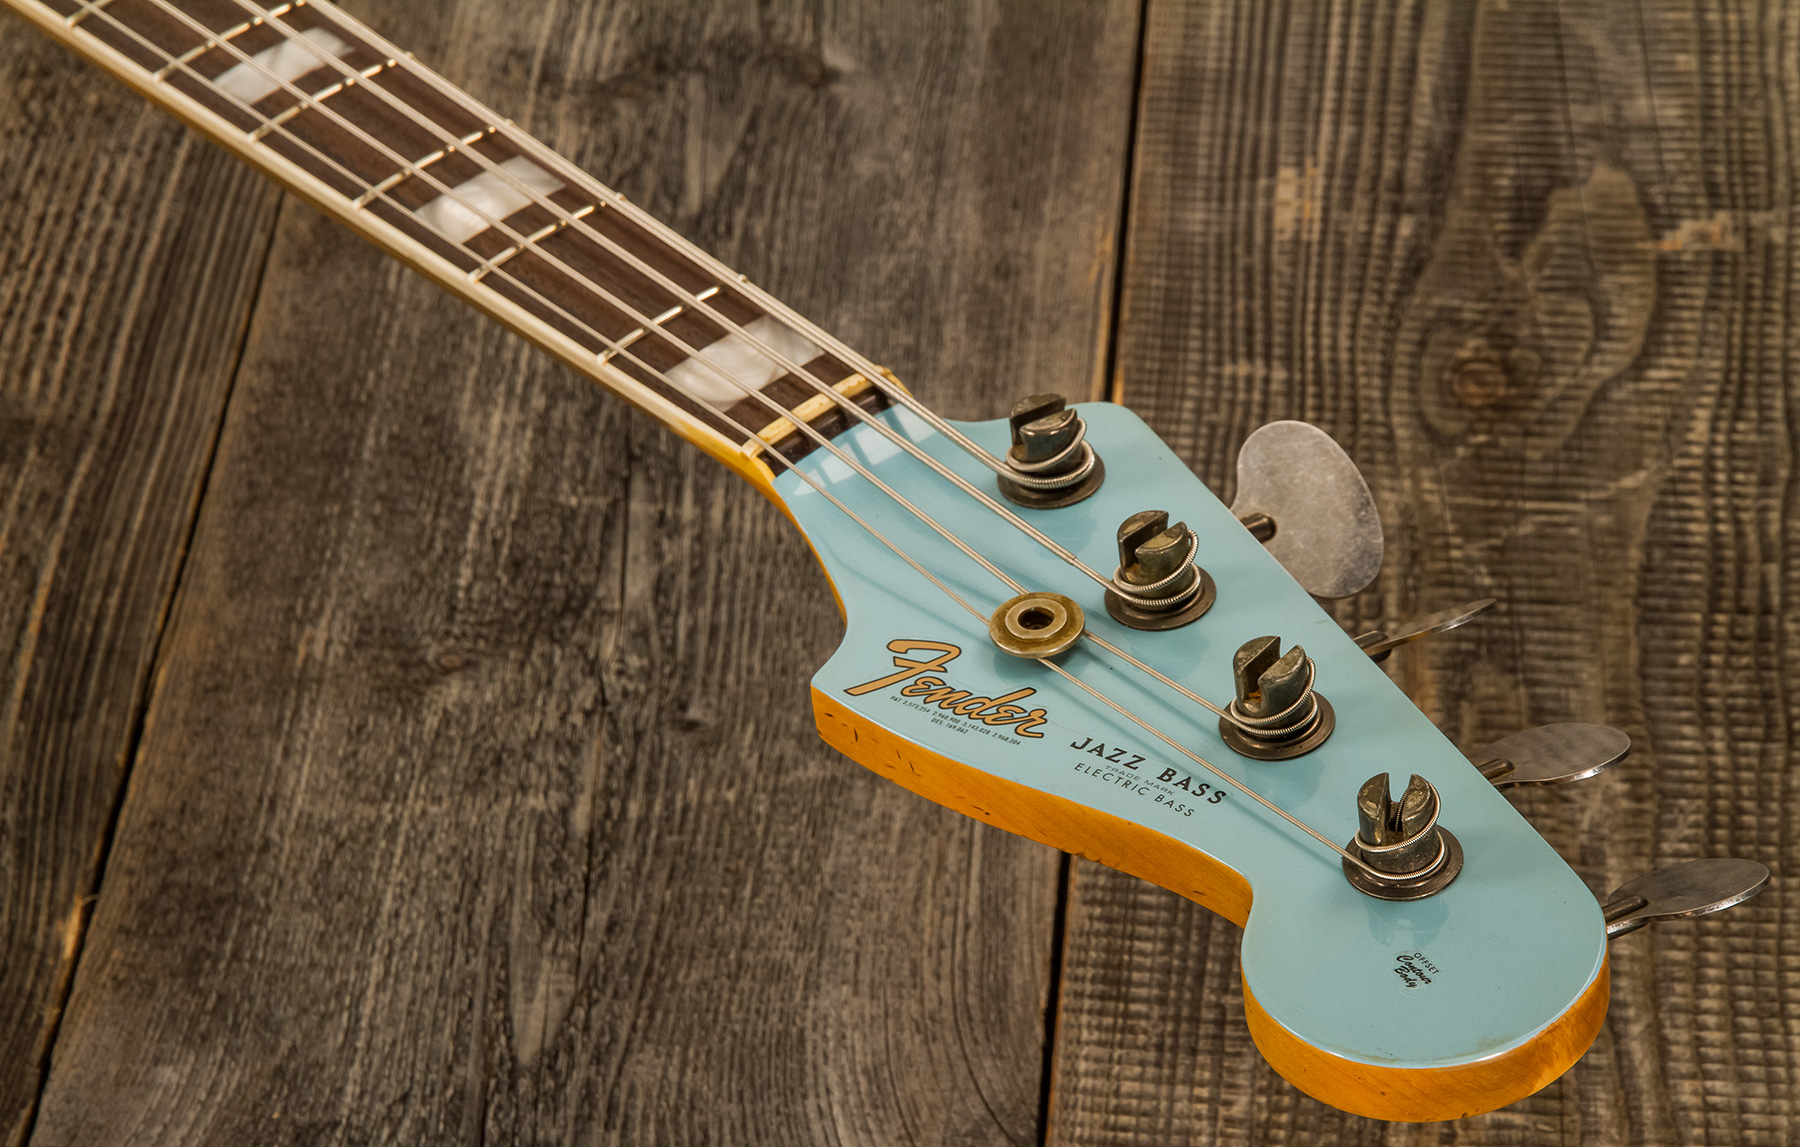 Fender Custom Shop Jazz Bass 1966 Rw #cz553892 - Journeyman Relic Daphne Blue - Bajo eléctrico de cuerpo sólido - Variation 4